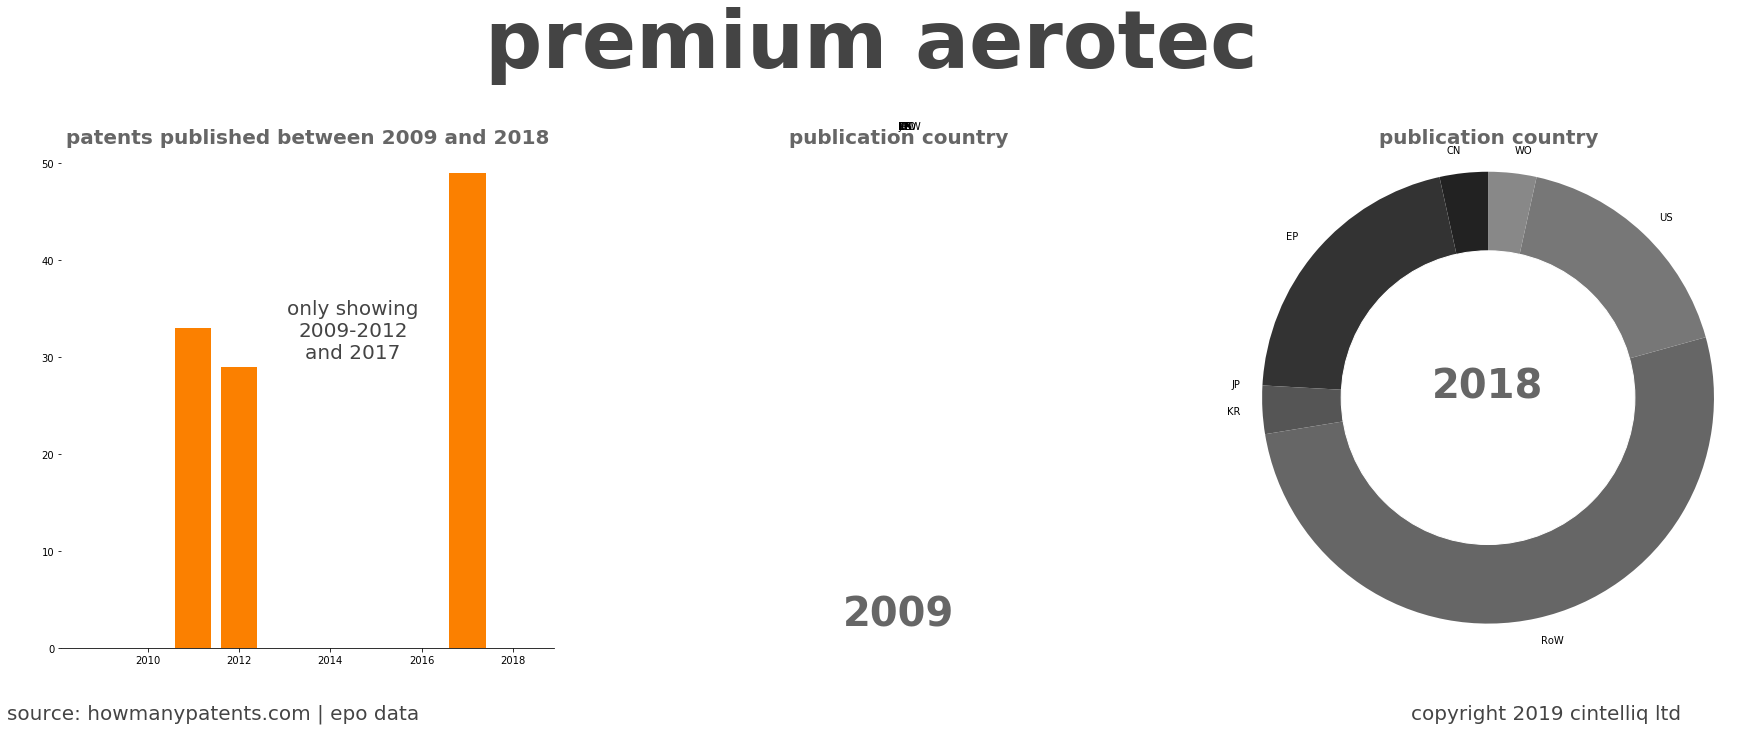 summary of patents for Premium Aerotec